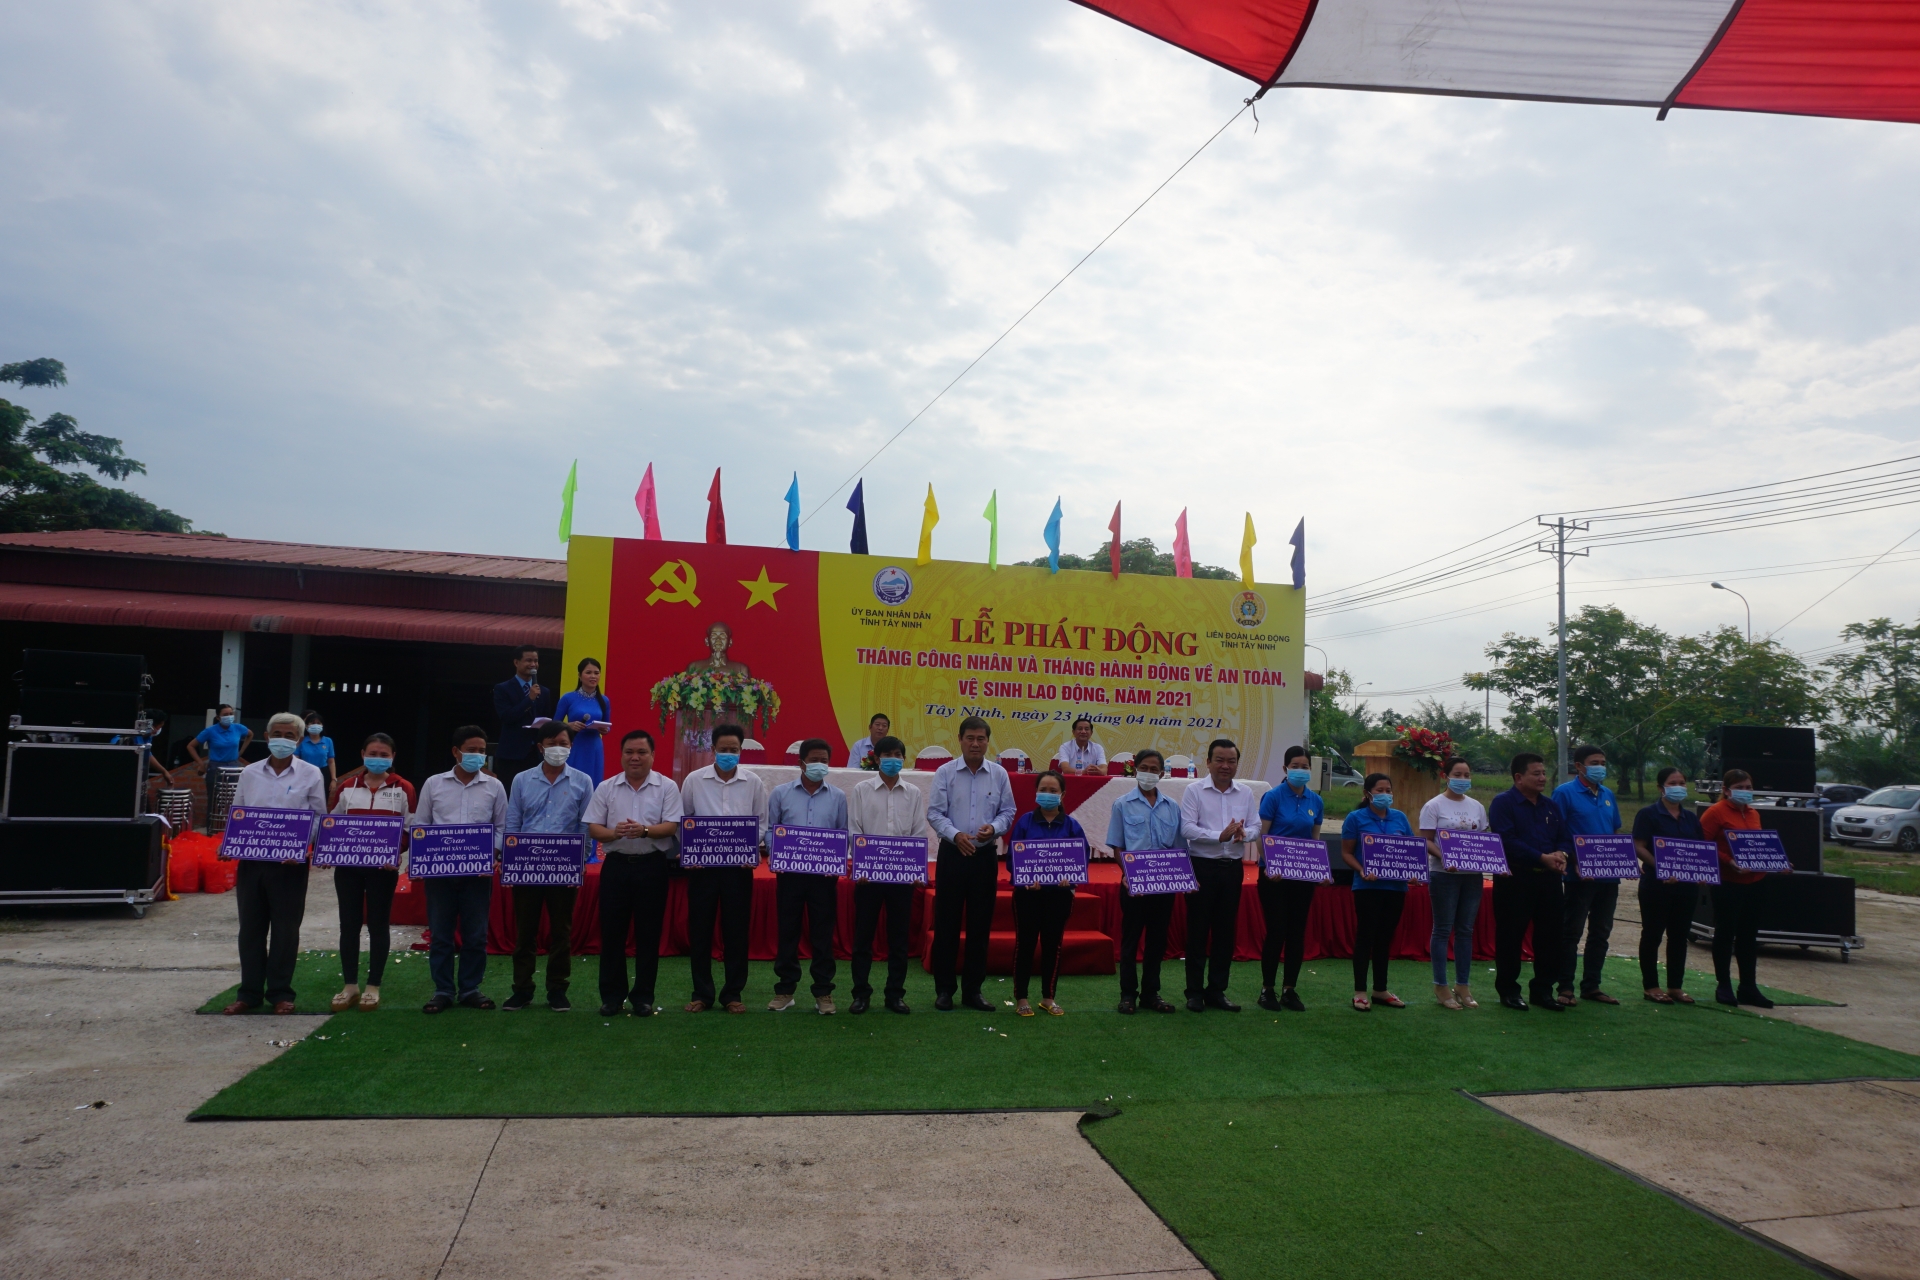 Tây Ninh tổ chức nhiều hoạt động ý nghĩa, thiết thực trong Tháng Công nhân 2021